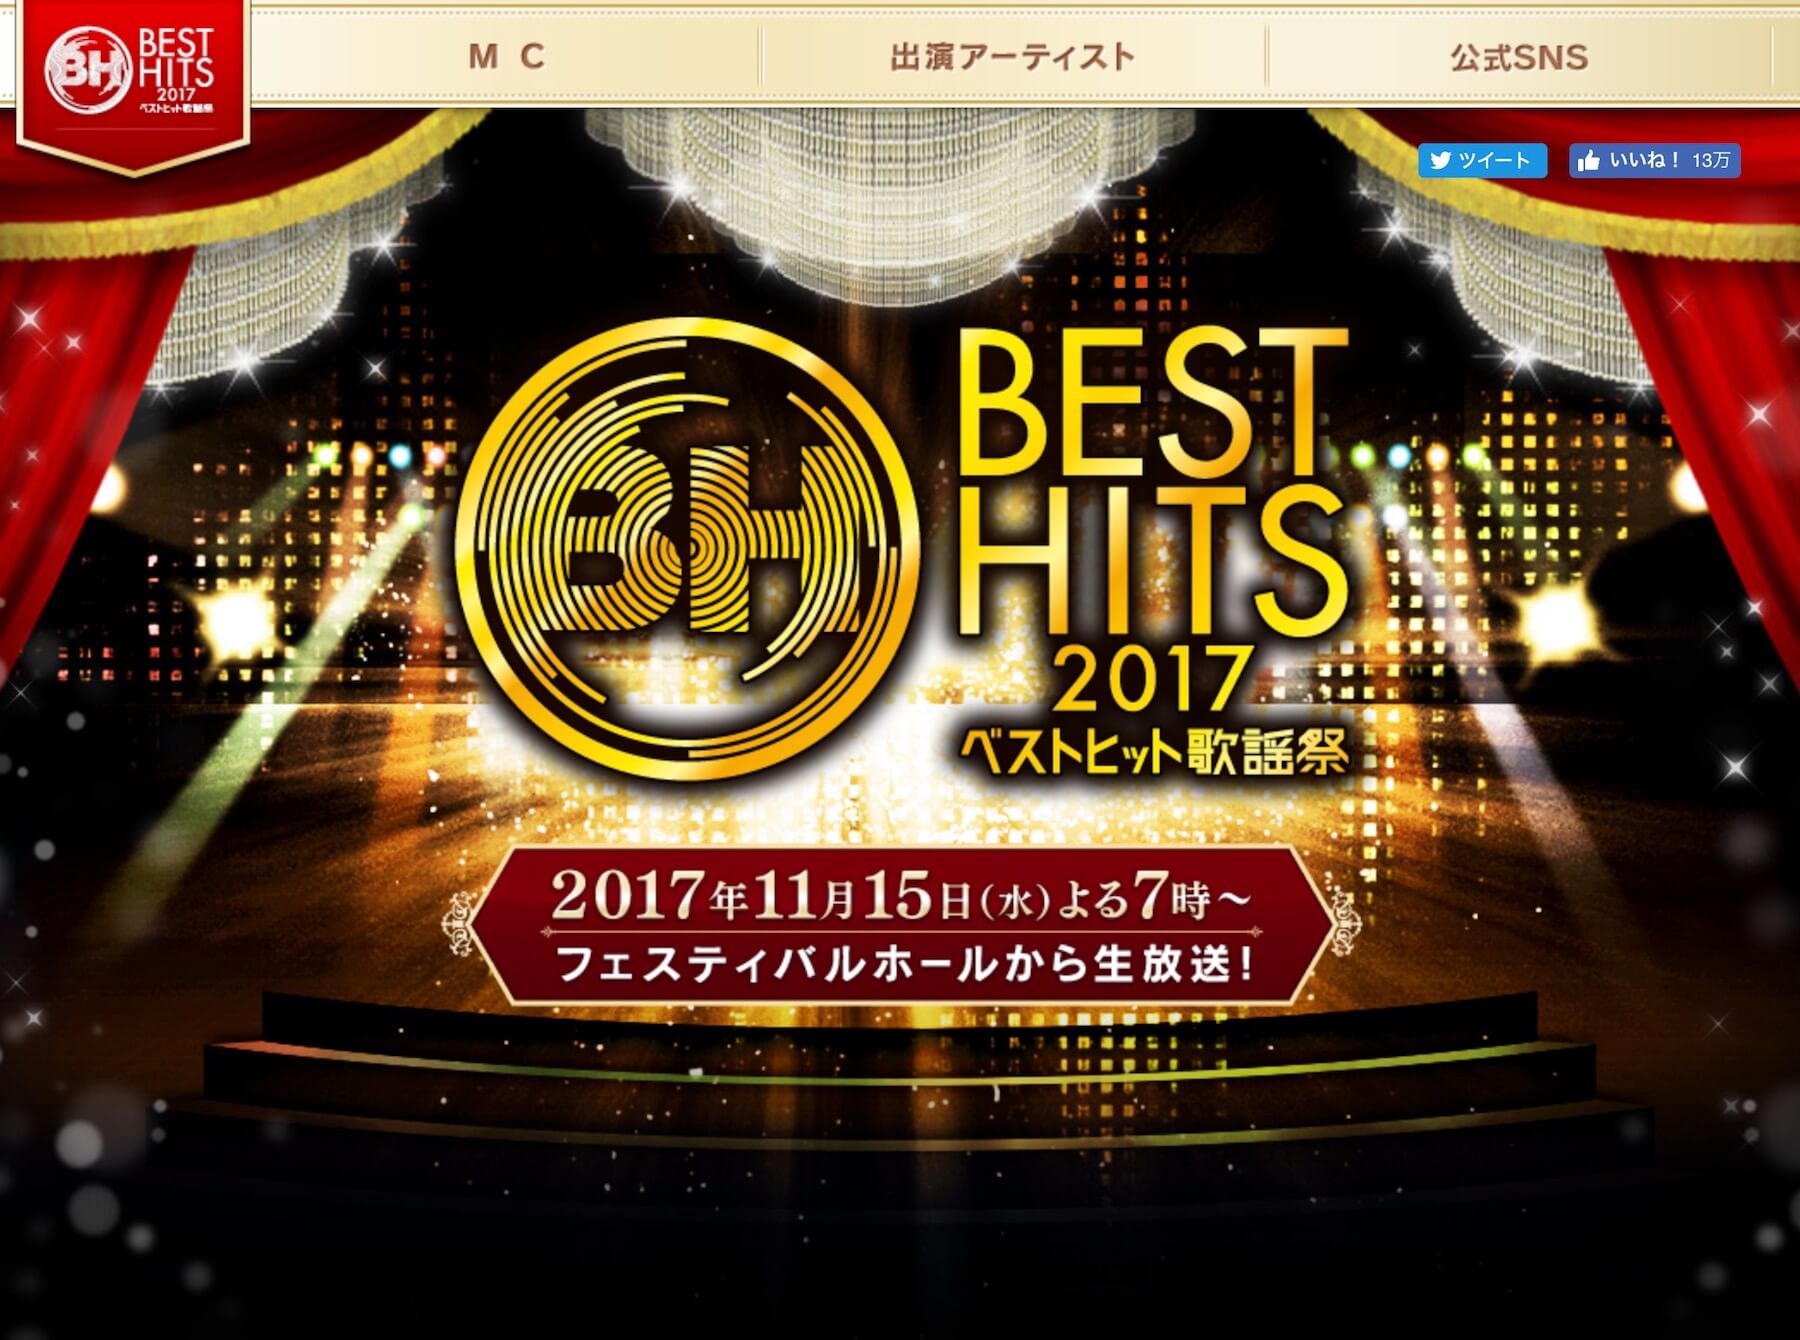 乃木坂46 欅坂46が今年も登場 ベストヒット歌謡祭17 出演アーティスト18組発表 Nogizaka Journal